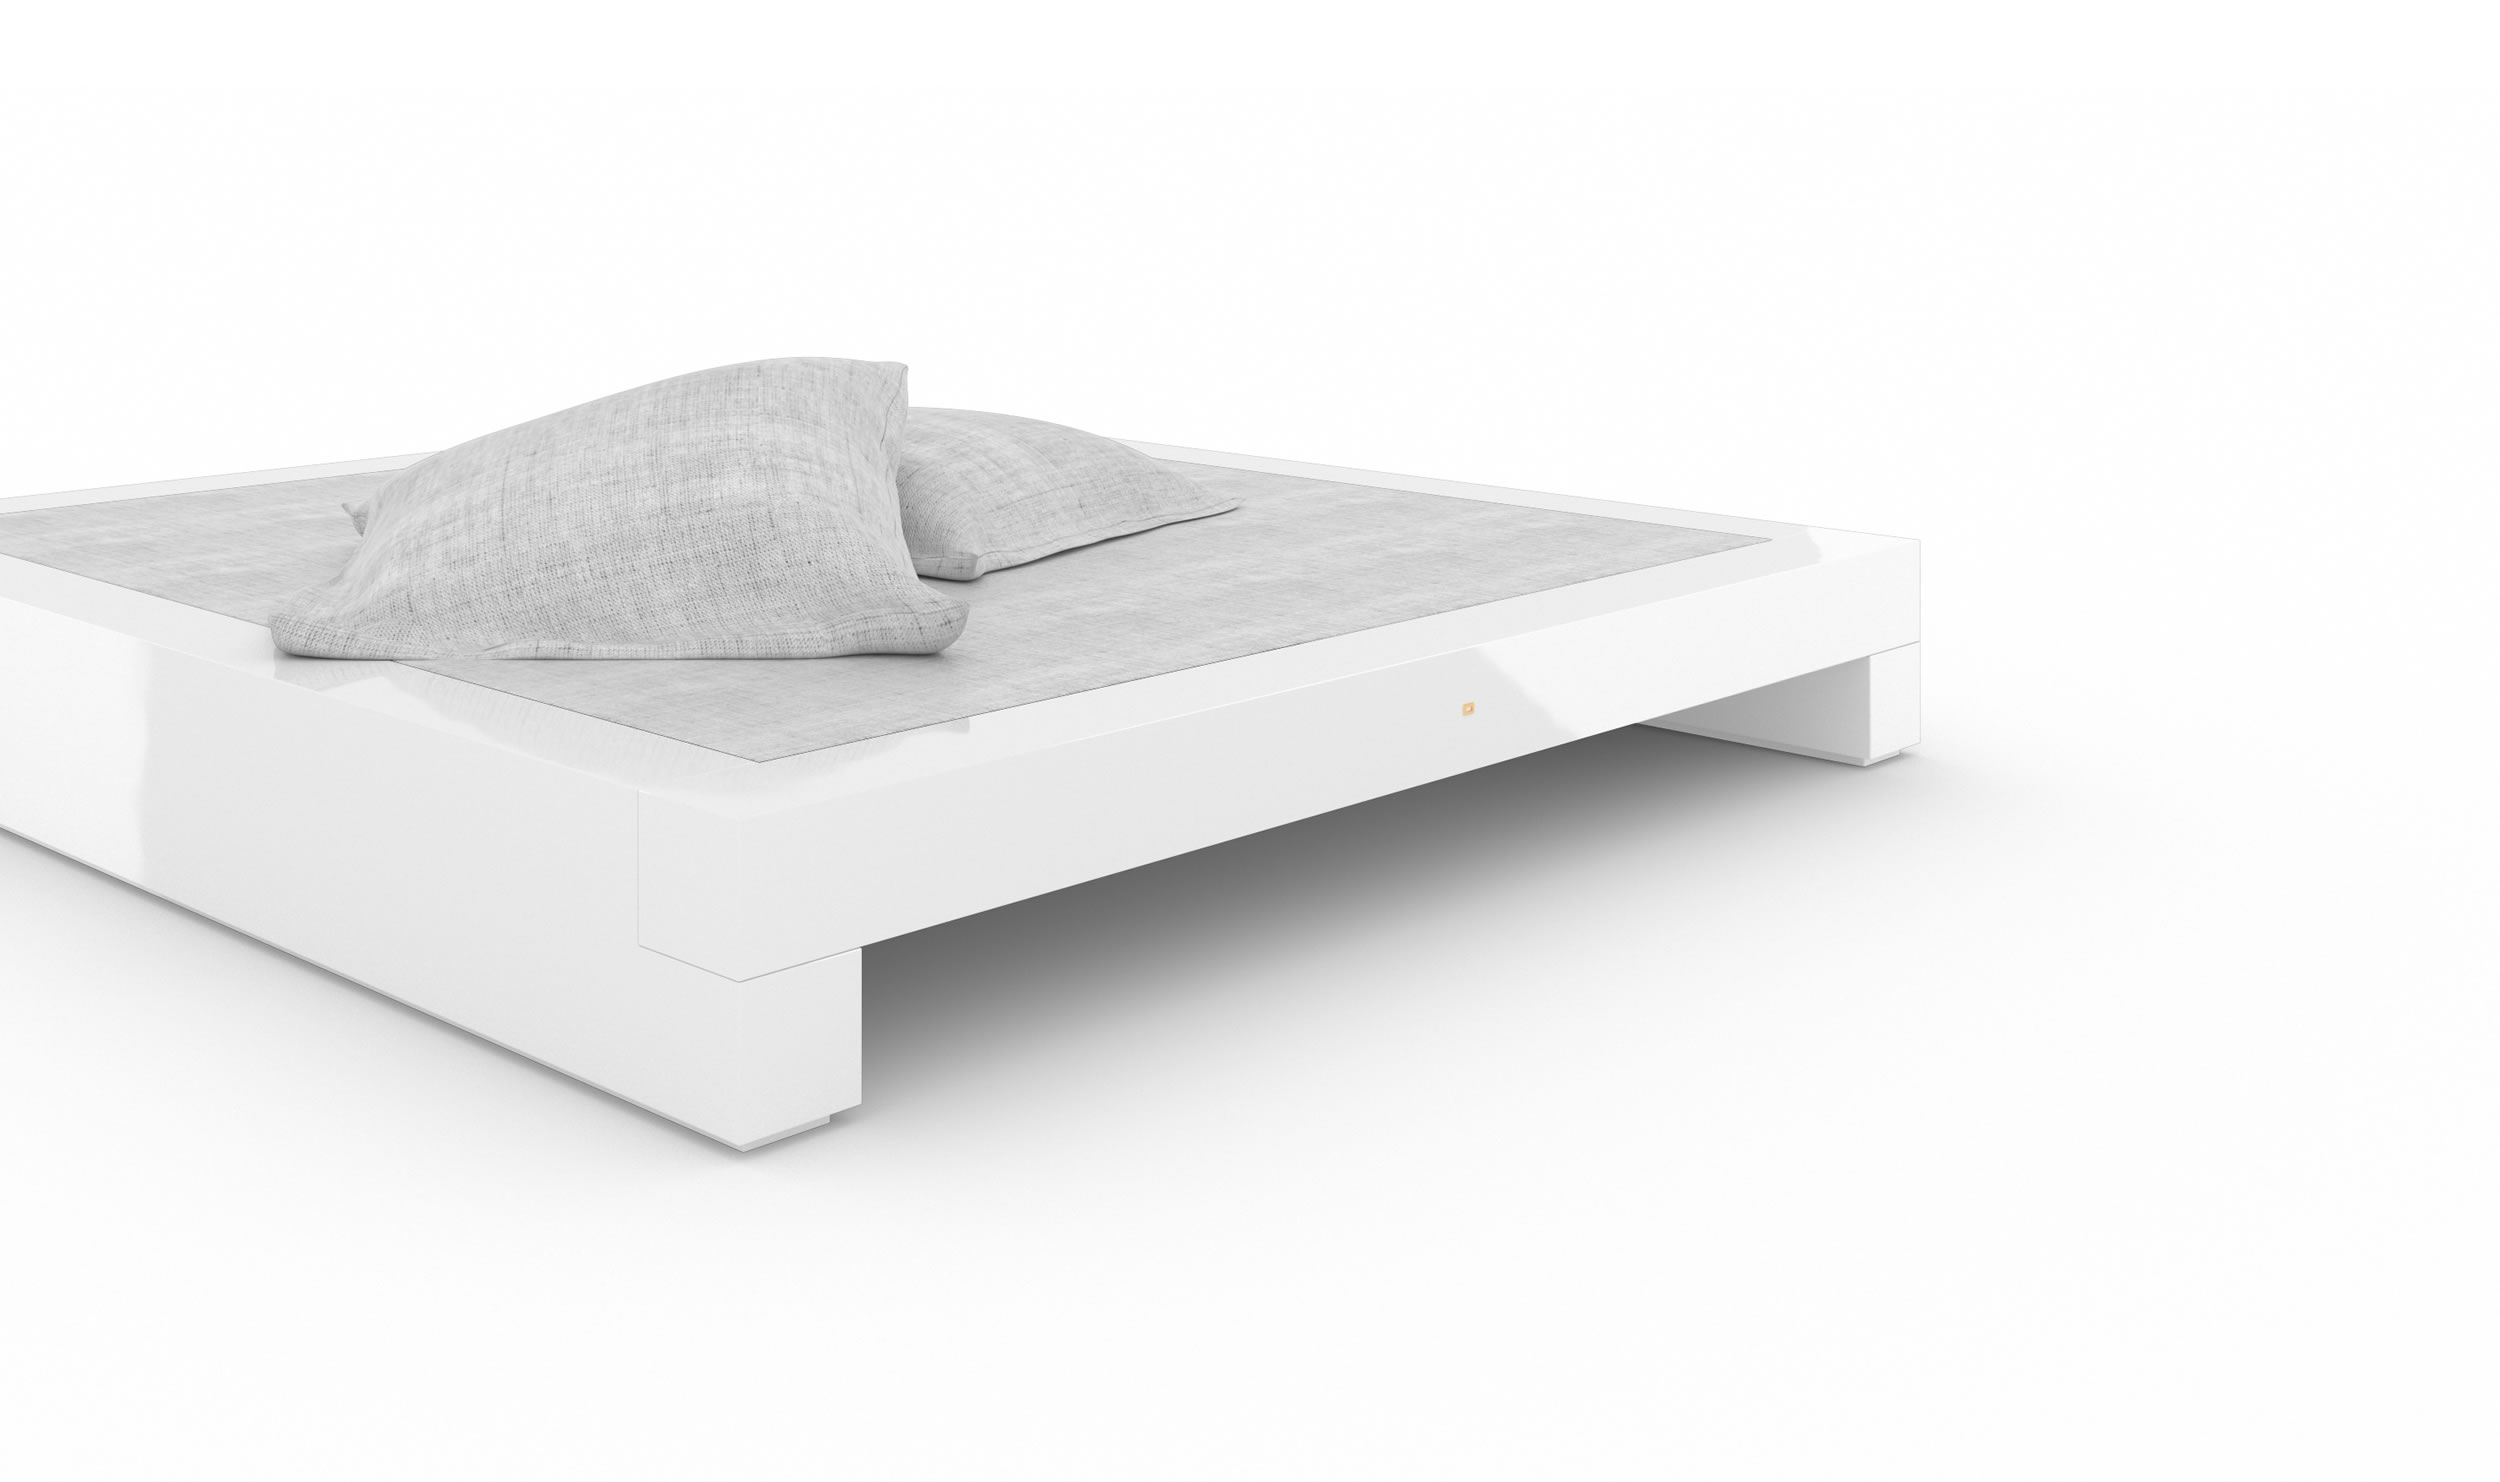 Design Bed White Glossy Elegant Handcrafted Premium Design Luxury InteriorFELIX SCHWAKE